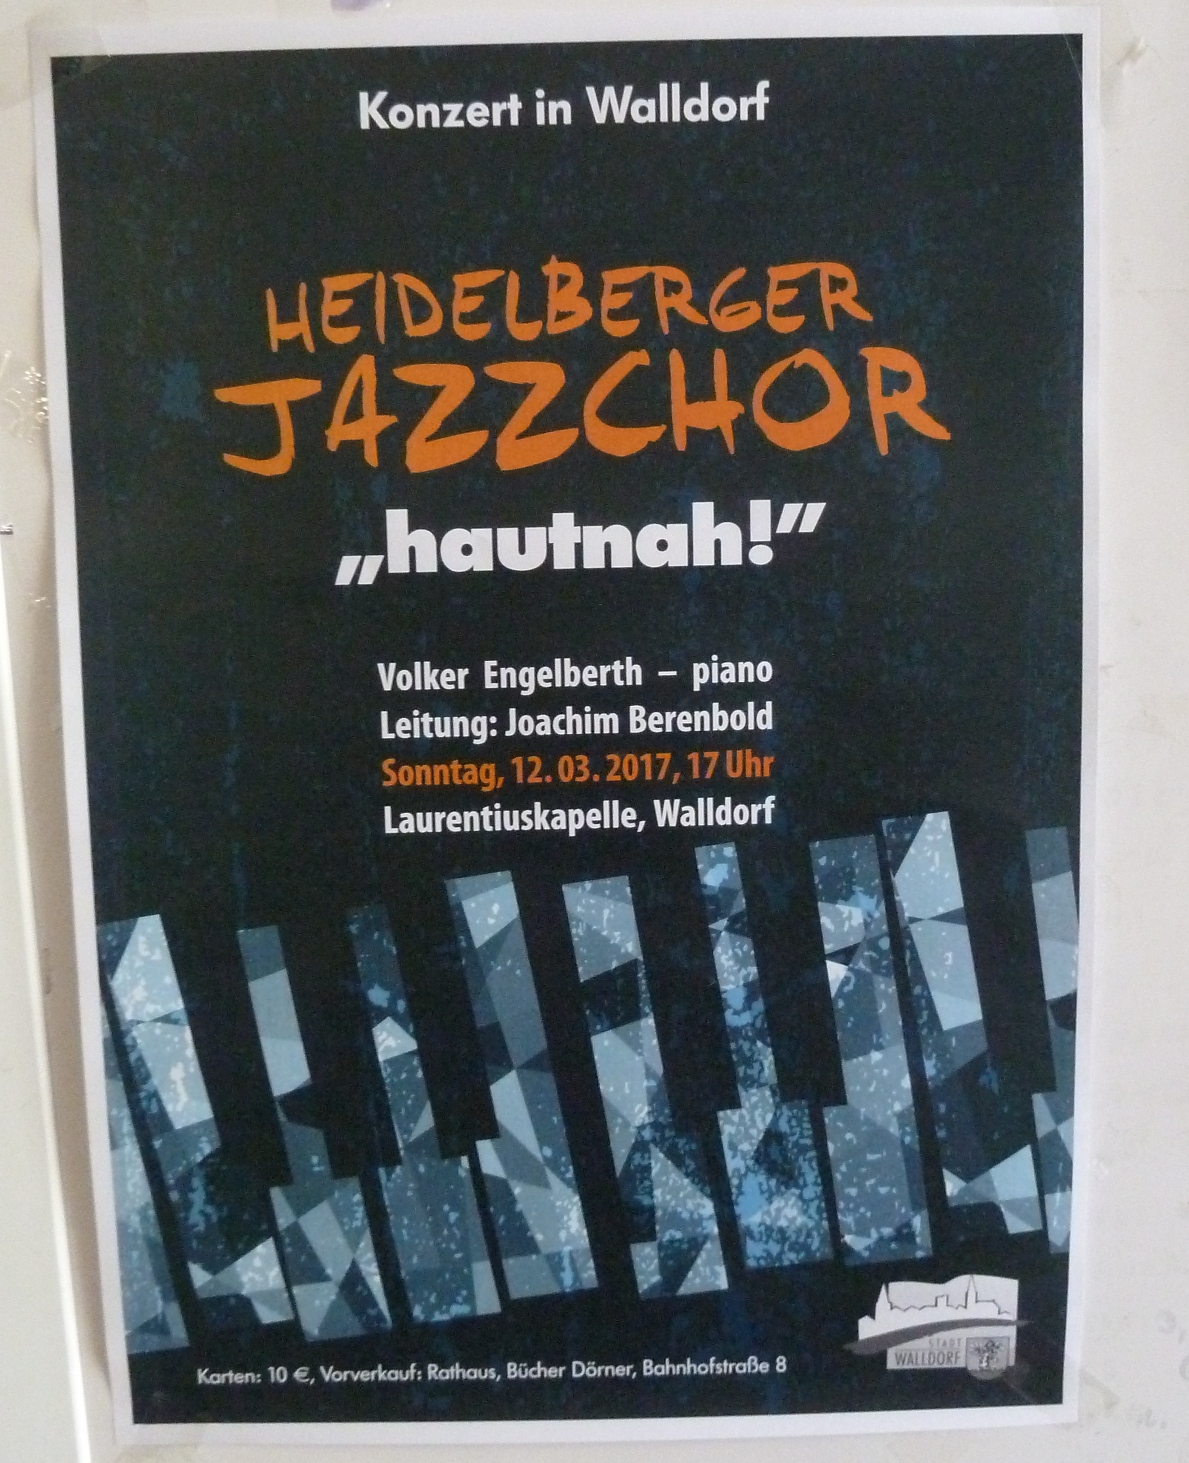 Morgen, Sonntag: Heidelberger Jazzchor „hautnah!“ in der Laurentiuskapelle Walldorf